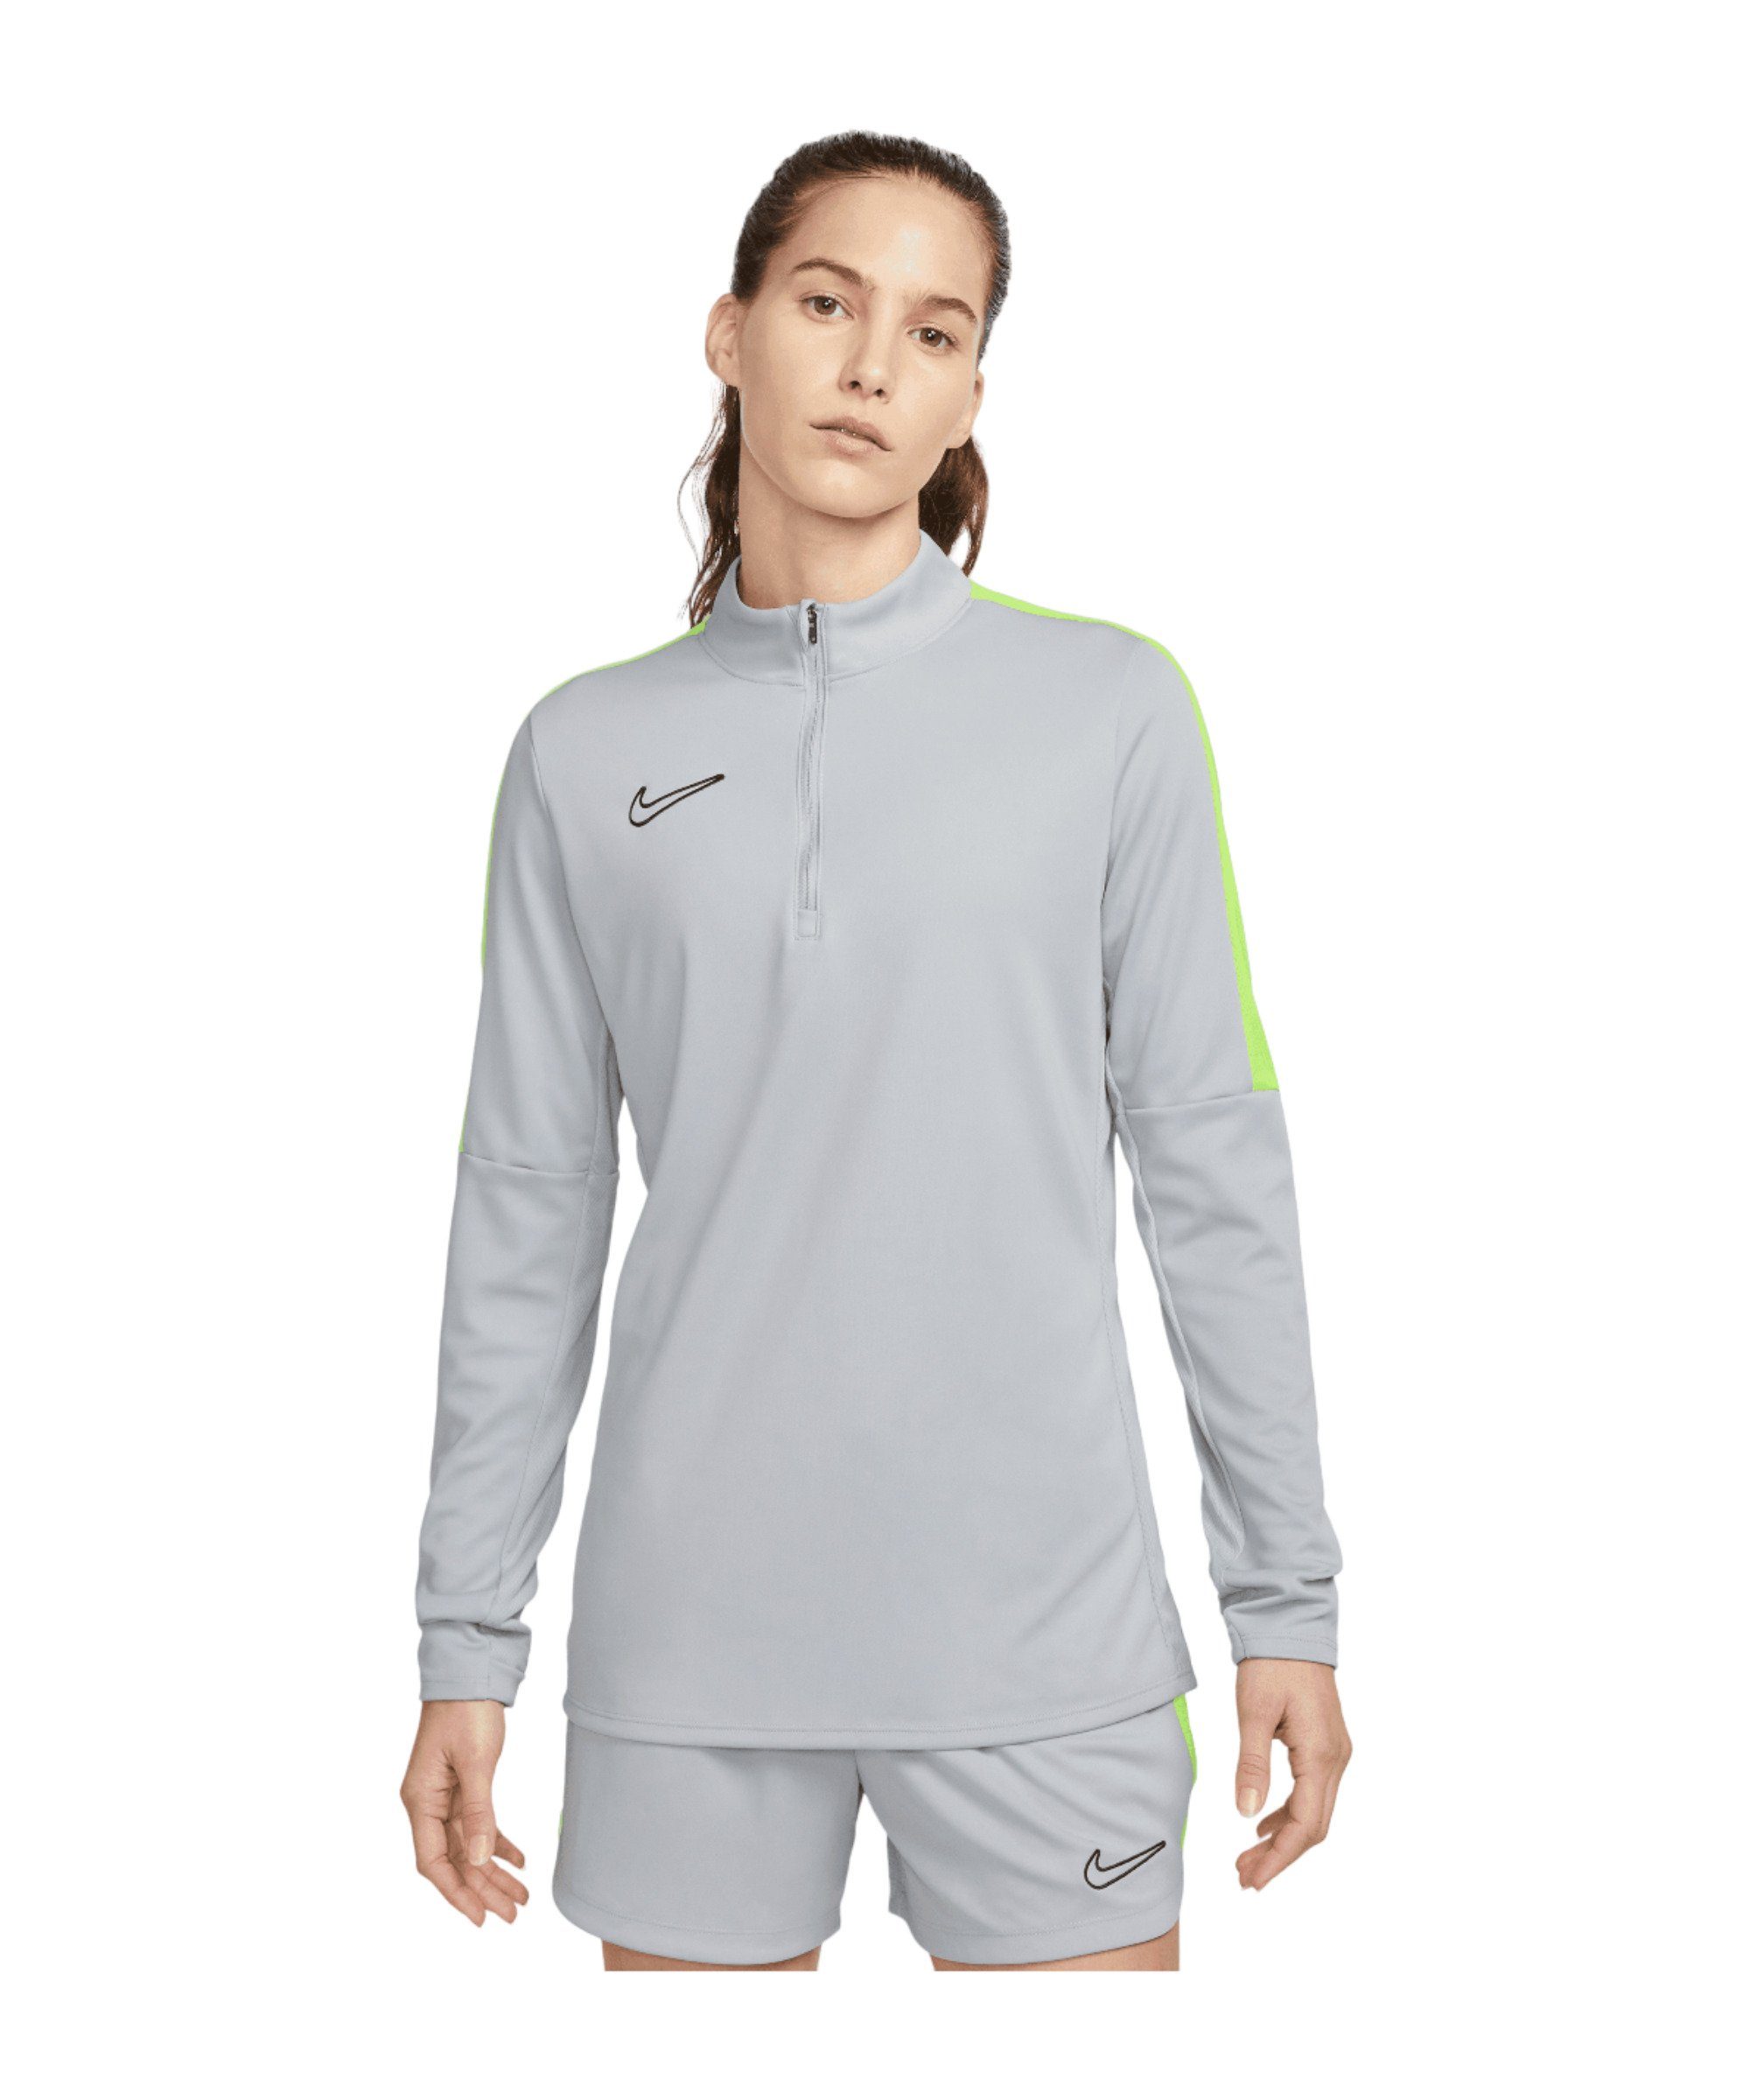 Academy Nike silbergelbschwarz Sweatshirt Sweatshirt Damen